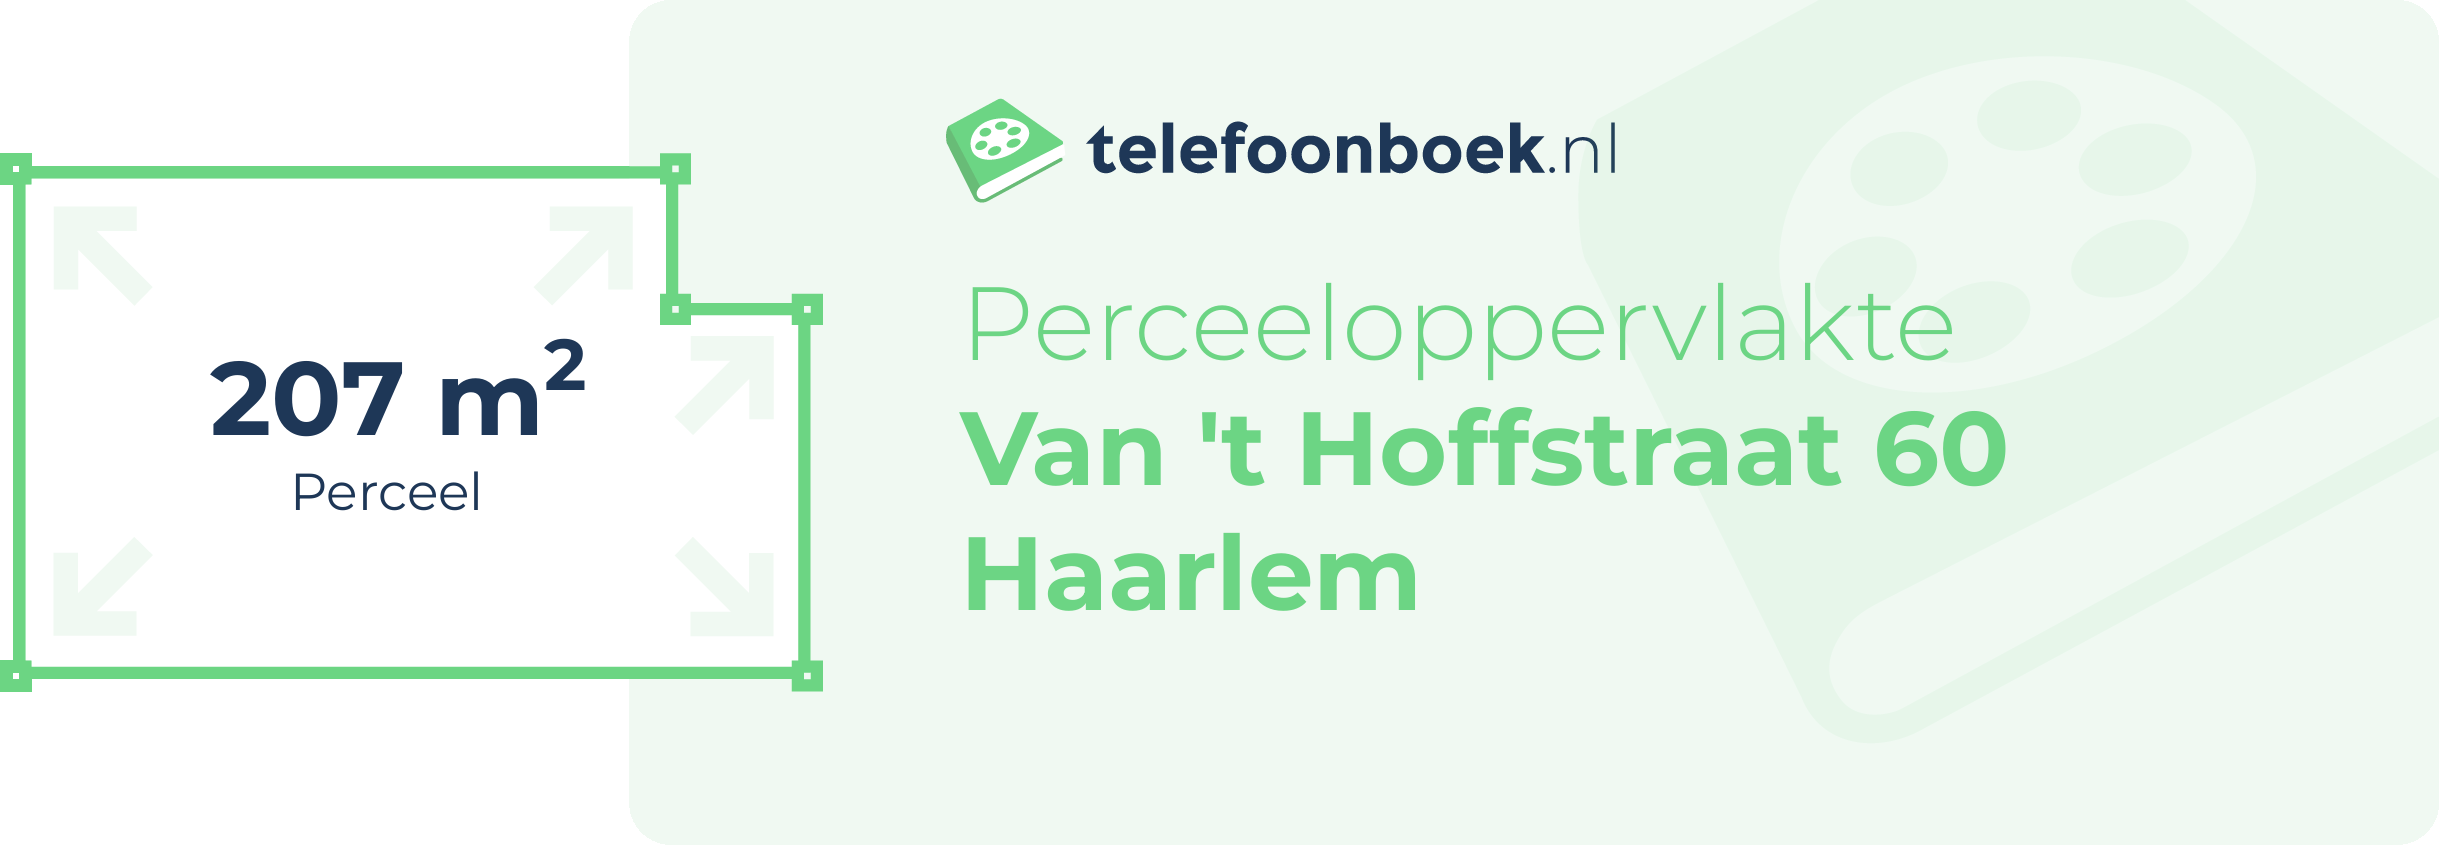 Perceeloppervlakte Van 't Hoffstraat 60 Haarlem